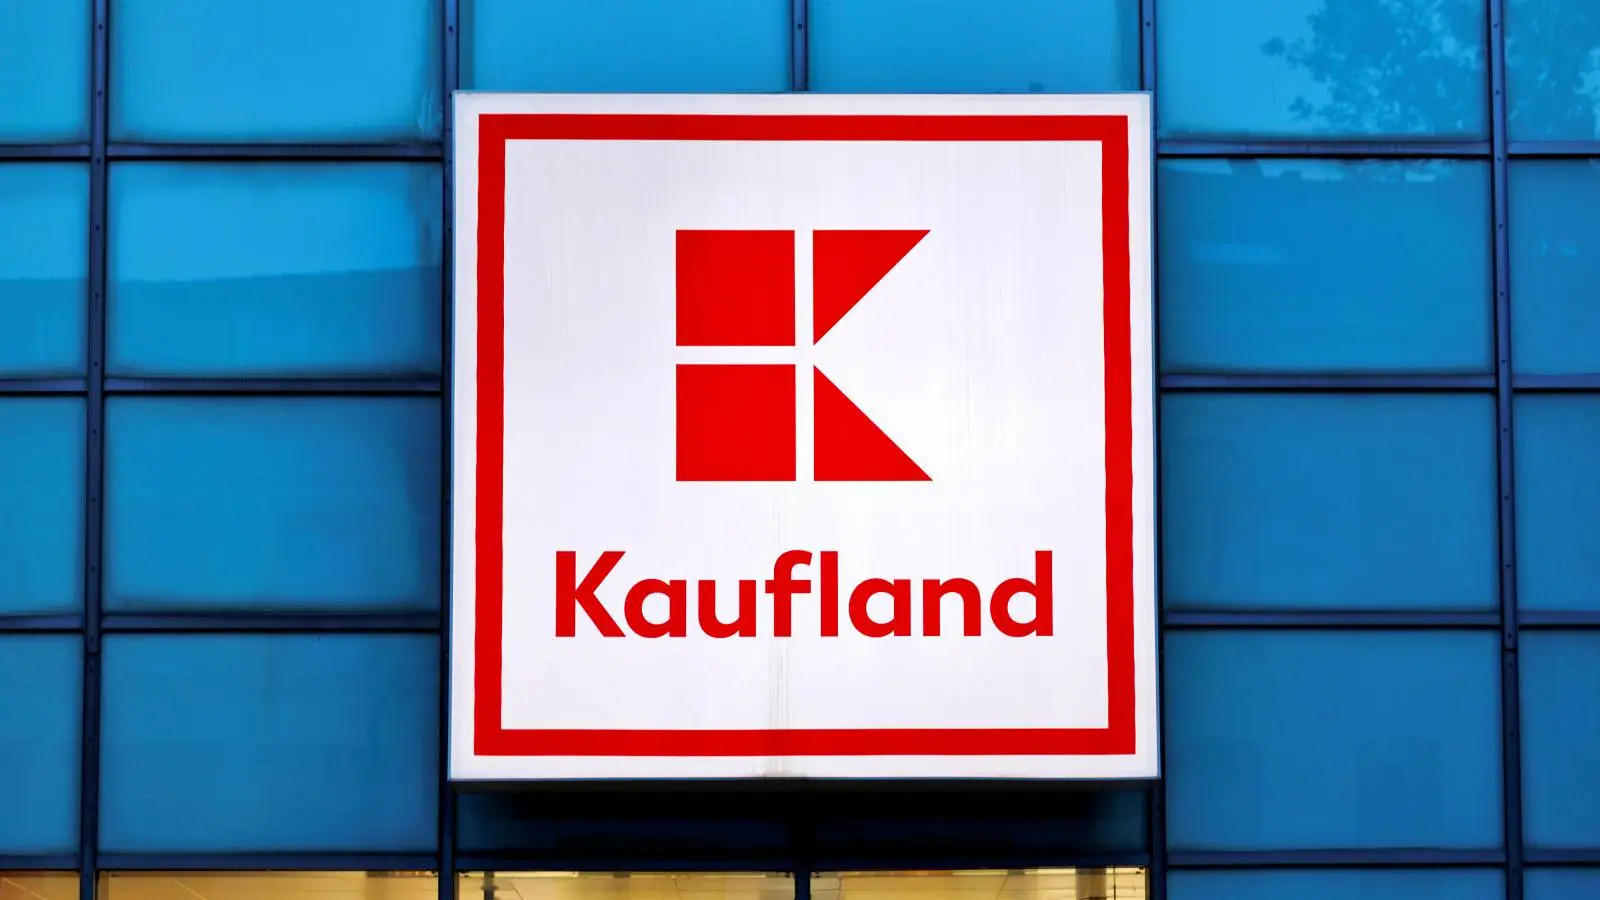 Kaufland tire le signal d'alarme DES MILLIONS de Roumains